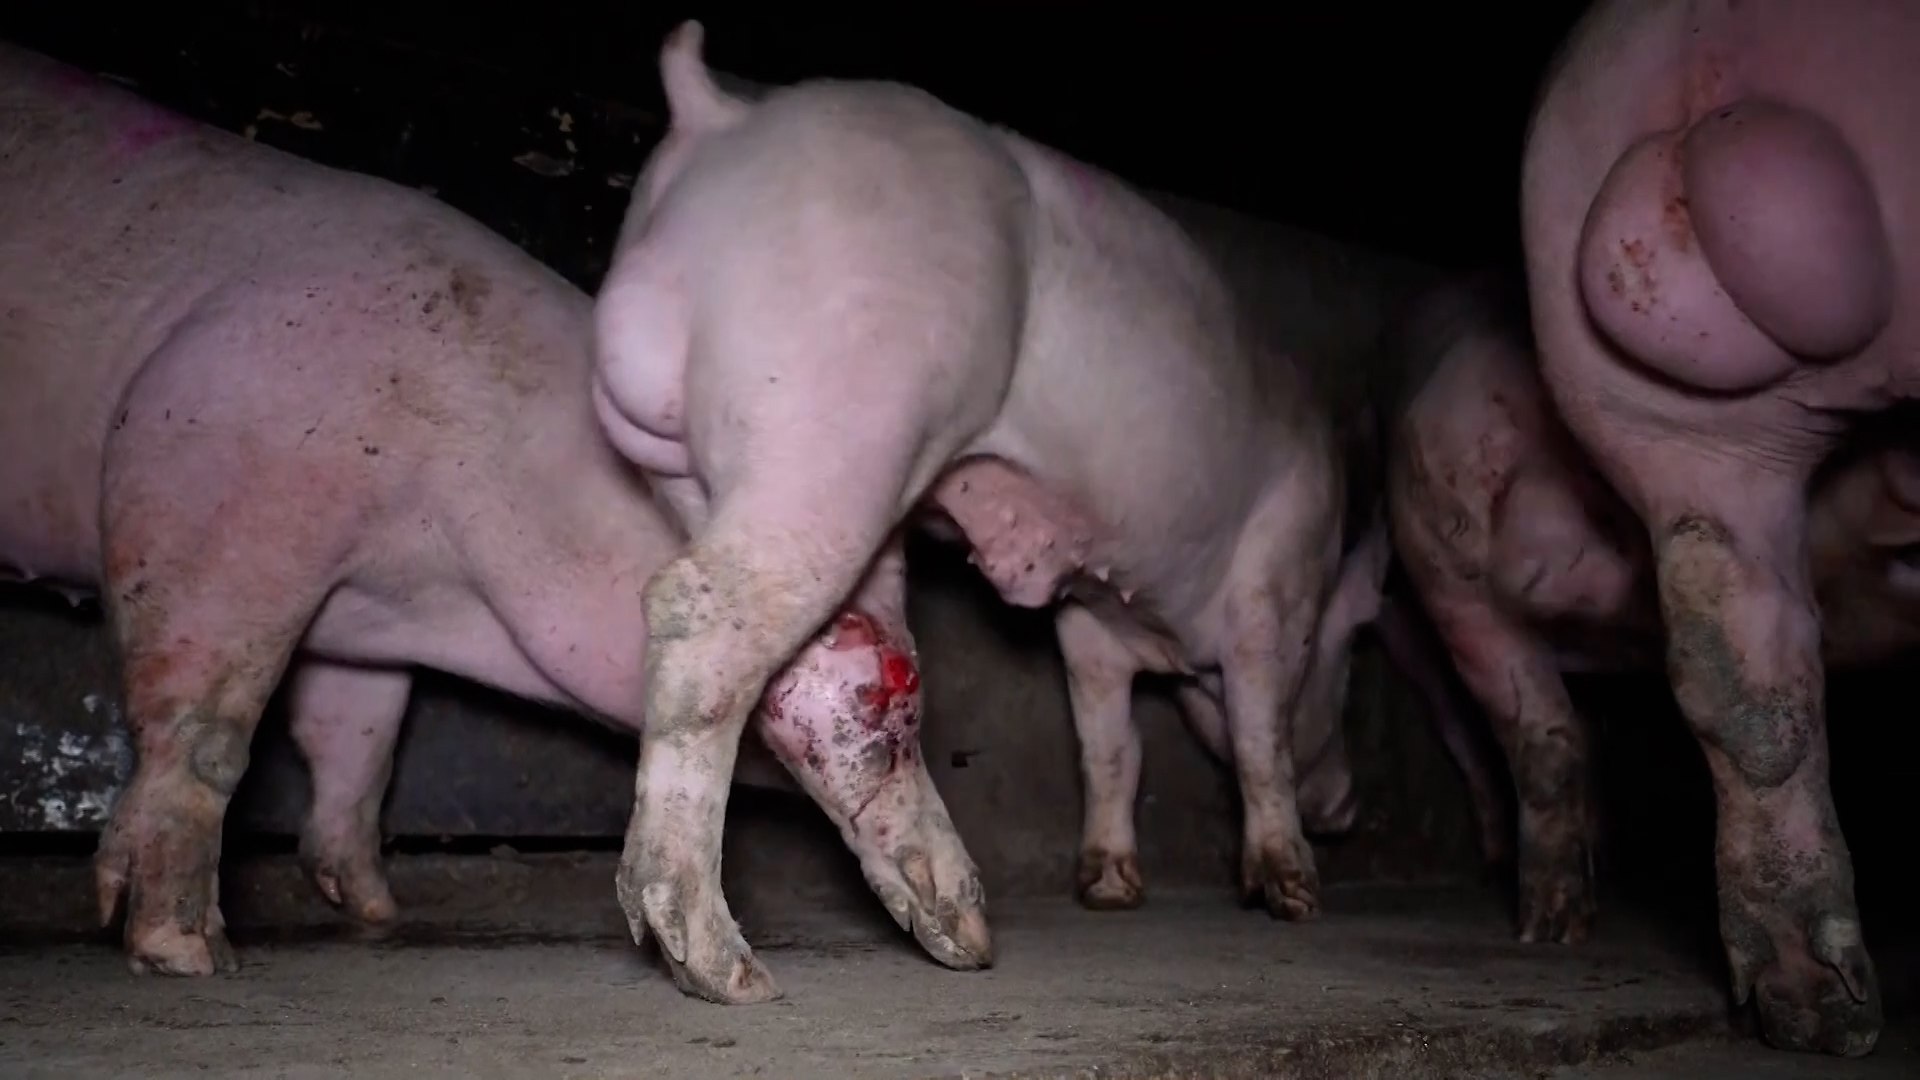 Cerdos con deformaciones, con heridas infectadas, con ratas en los comederos... Denuncian una granja del terror en Burgos